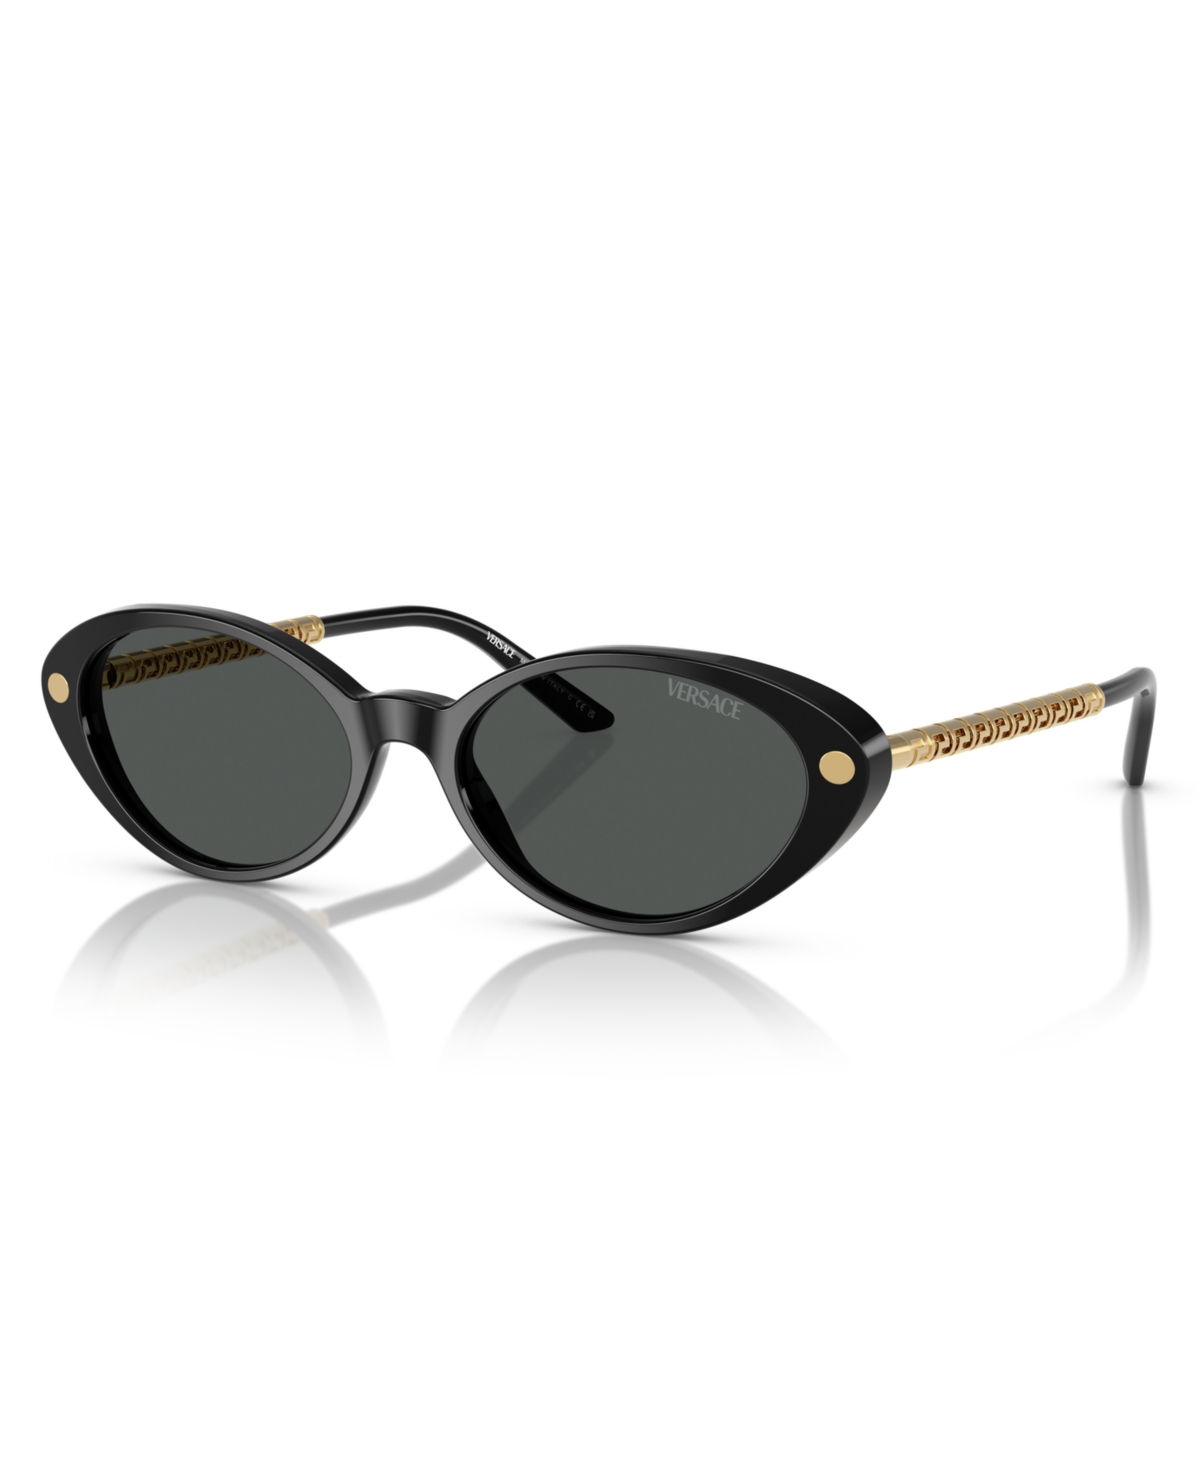 Women's Sunglasses, Ve4469 - Black